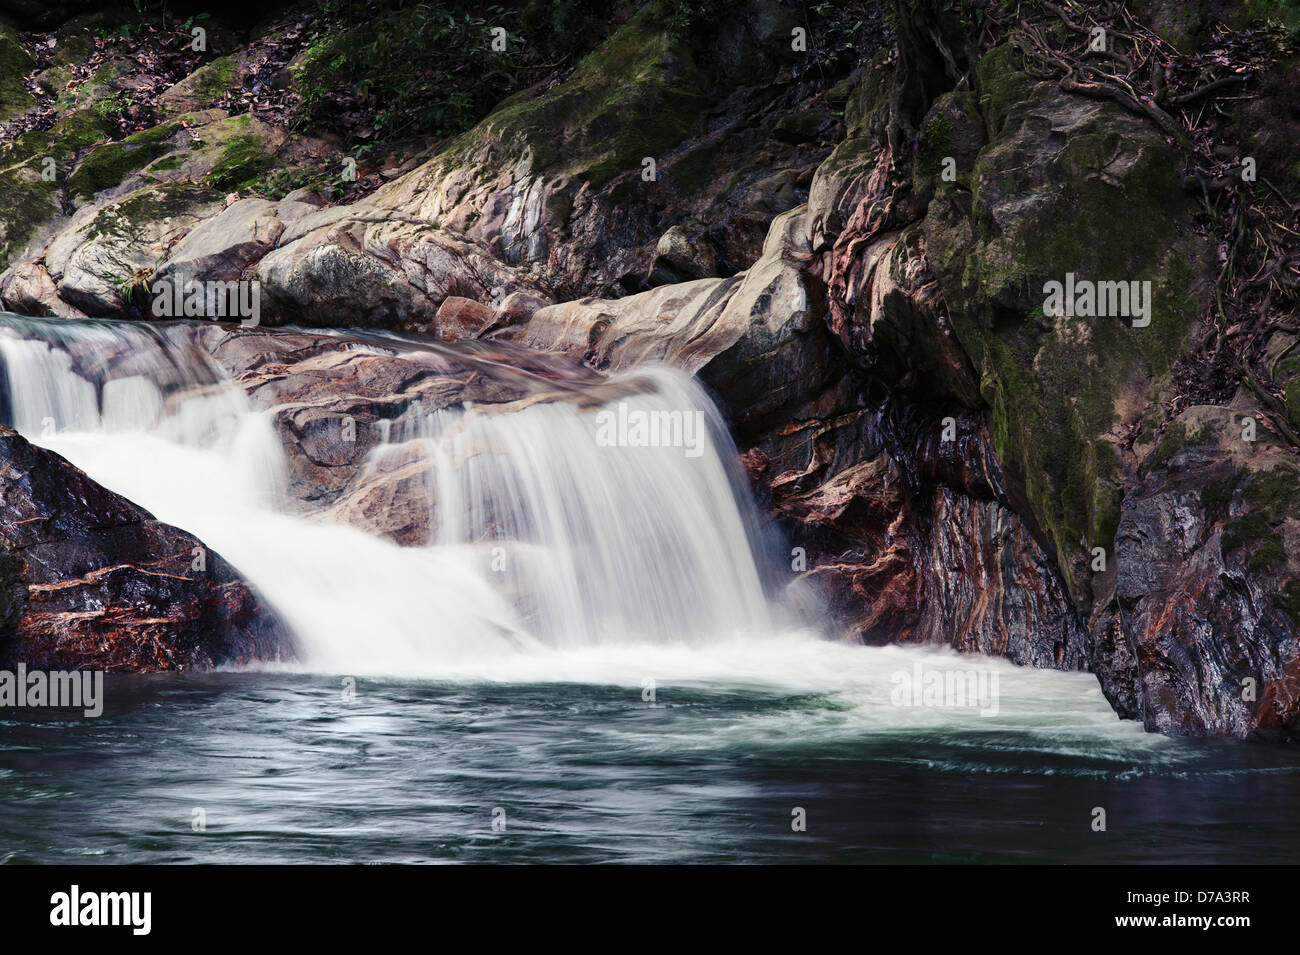 Der Wasserfall von Pozo Azul in der Sierra Nevada de Santa Marta - Kolumbien Stockfoto